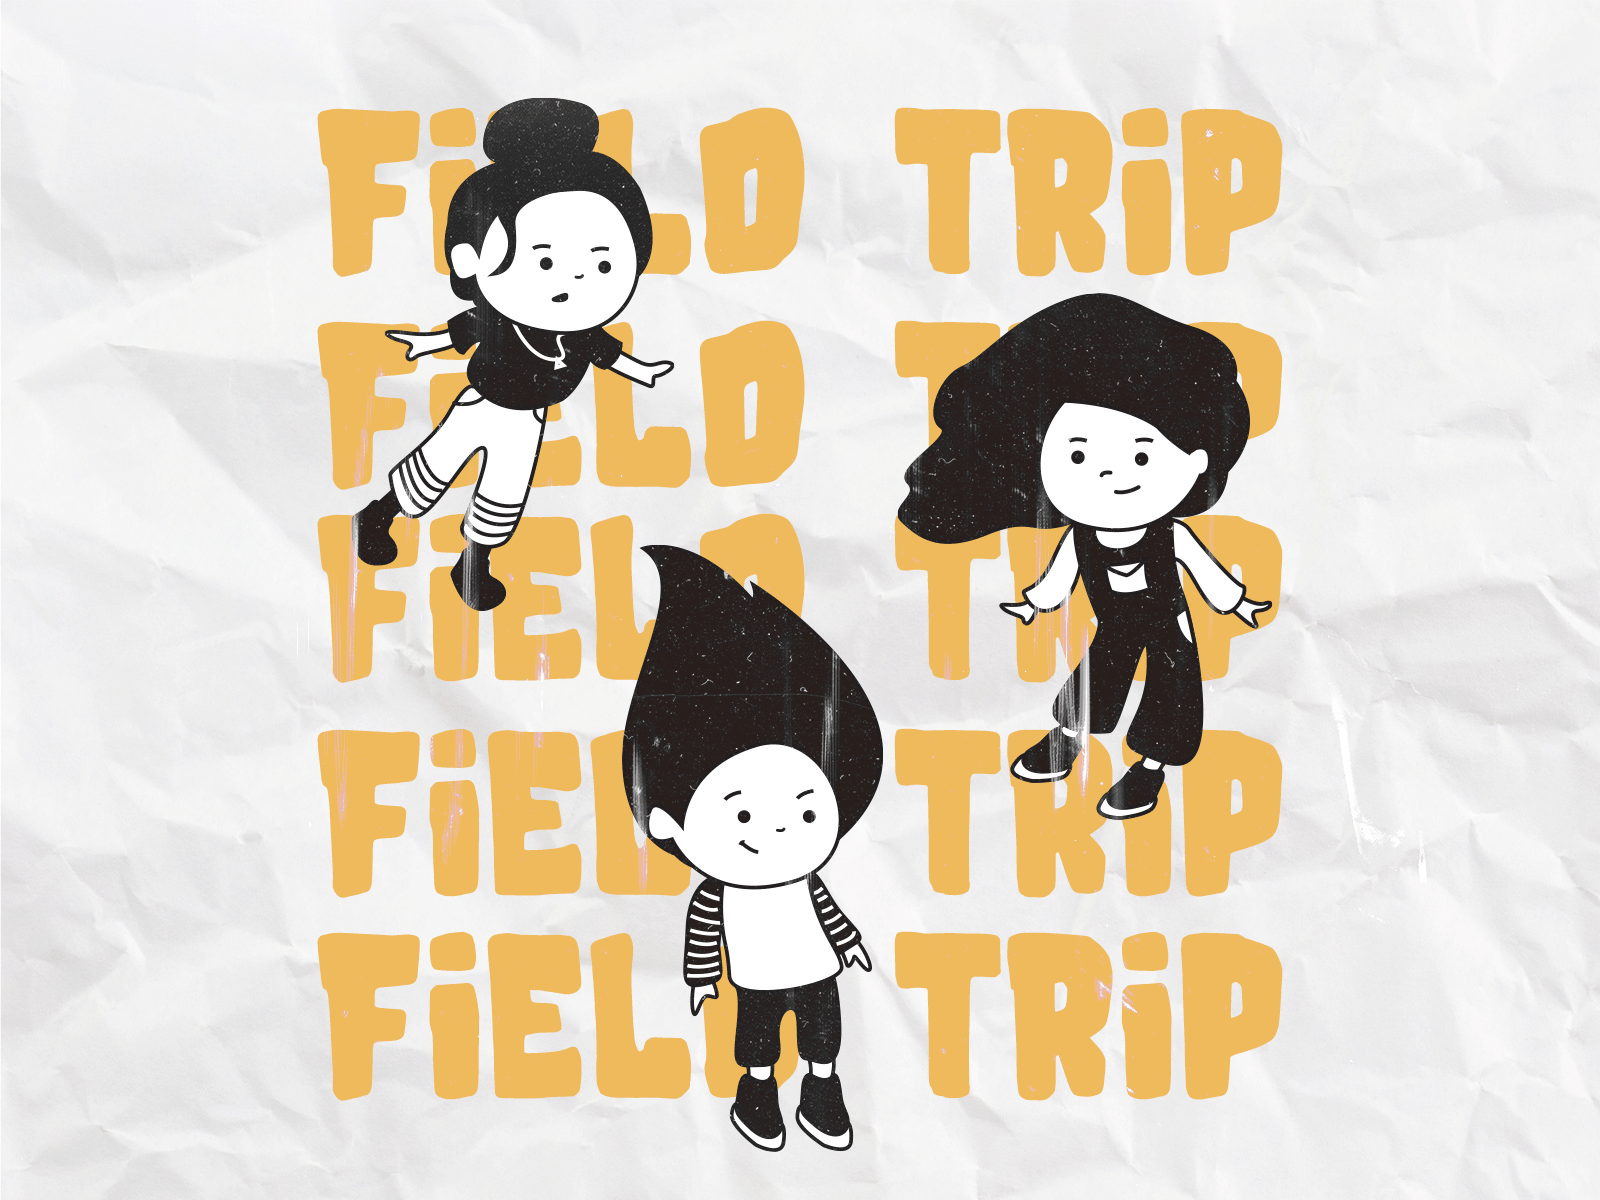 Field Trip (p2)